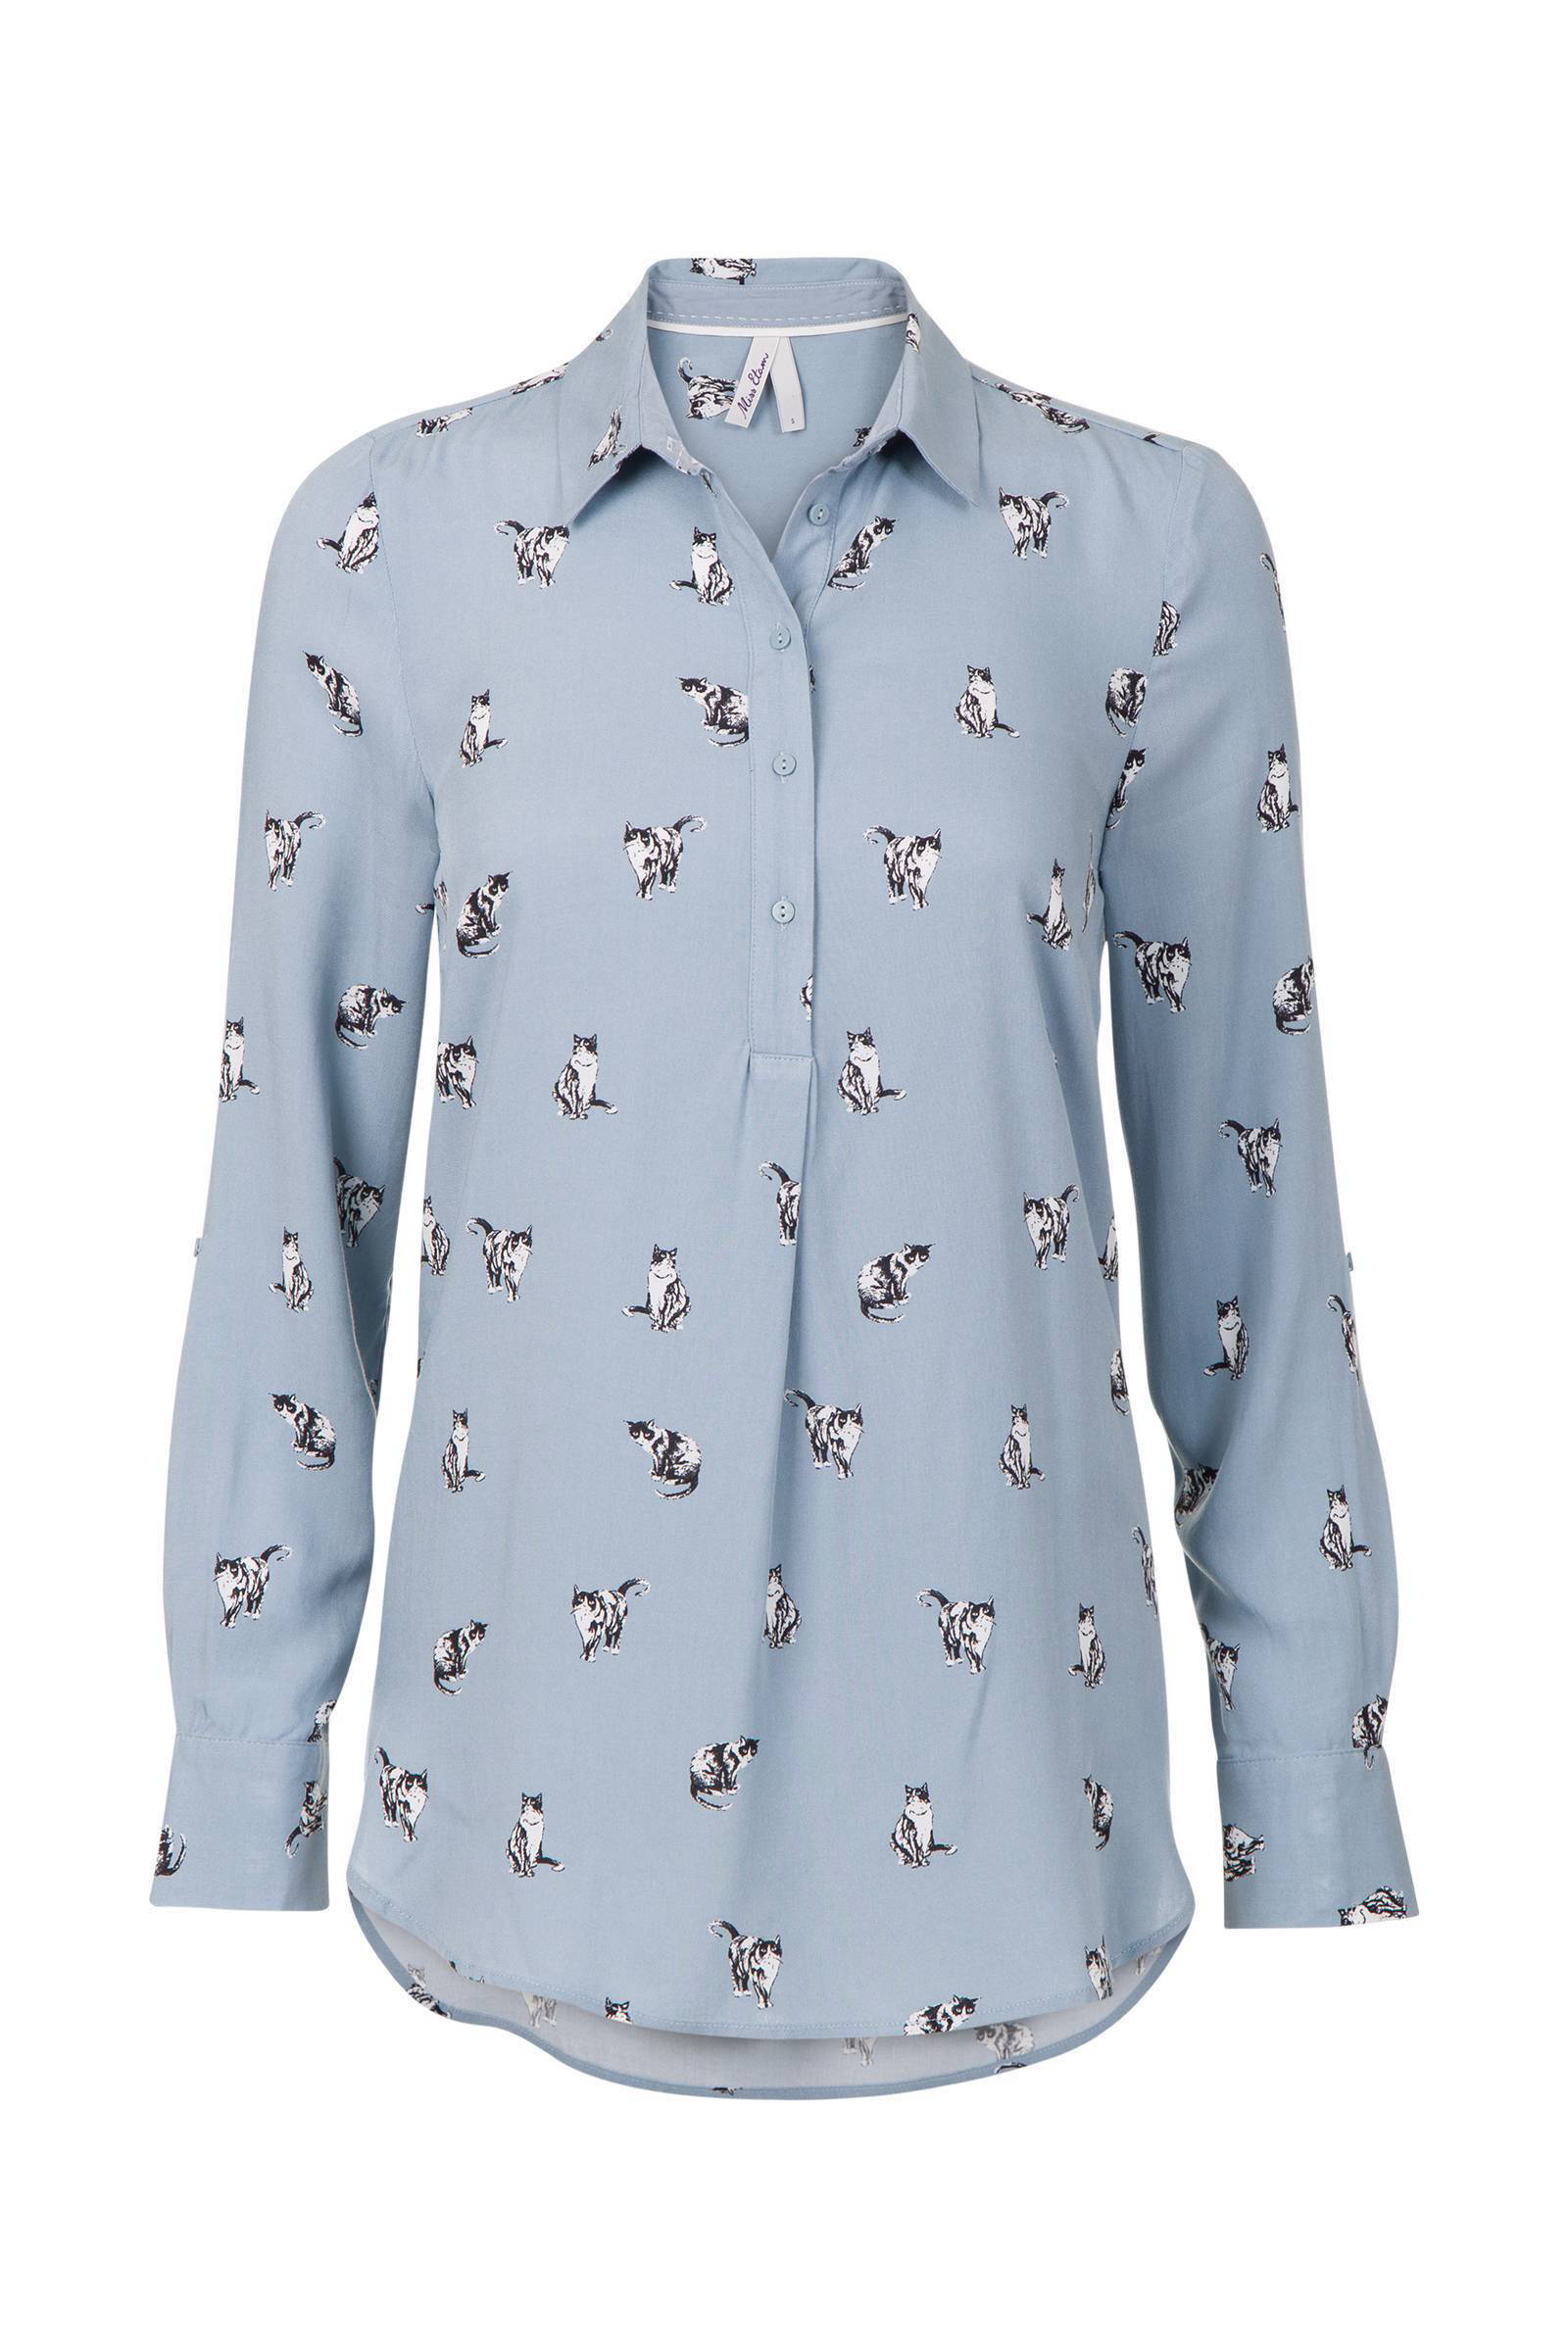 Goede Miss Etam Regulier blouse met all over print | wehkamp CU-69